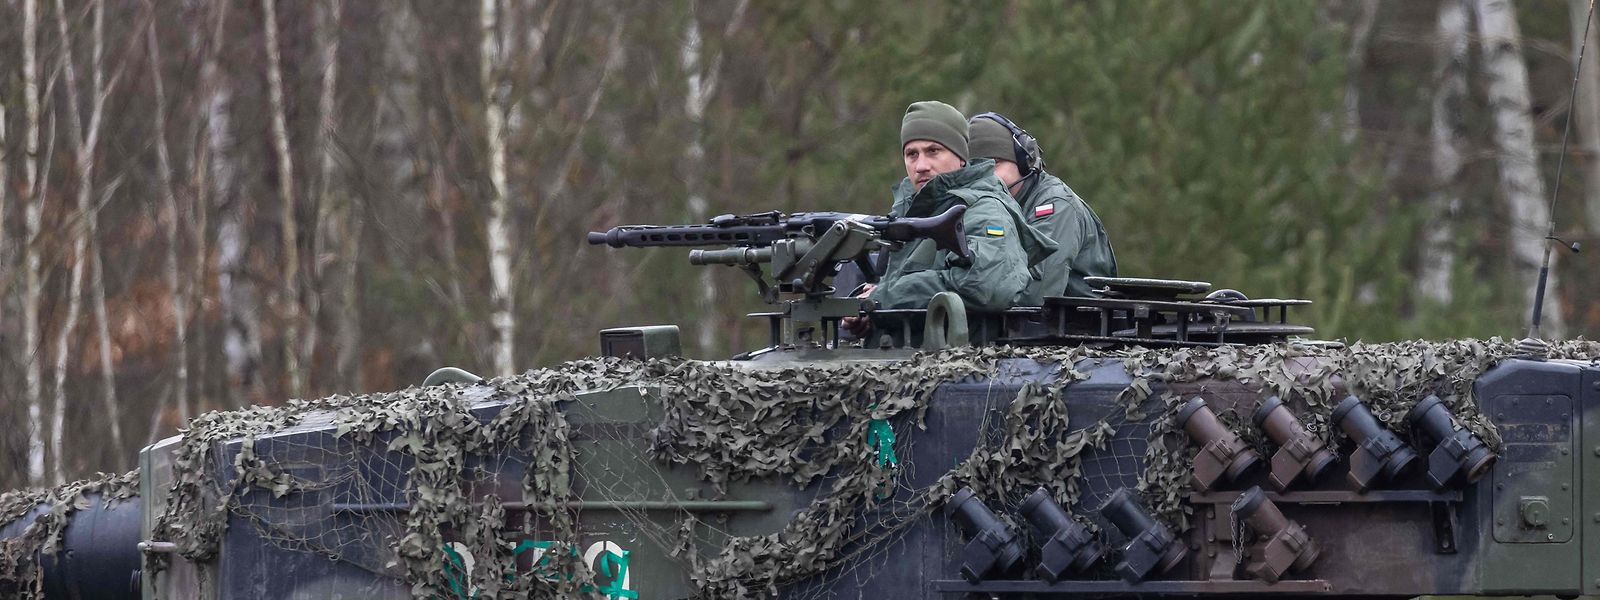 Ein ukrainischer und ein polnischer Soldat trainieren gemeinsam auf einem deutschen Leopard-2-Panzer. Ohne Waffenlieferungen und Unterstützung aus dem Westen hätte "die Ukraine als souveräner Staat nicht überlebt", sagt Claudia Major.